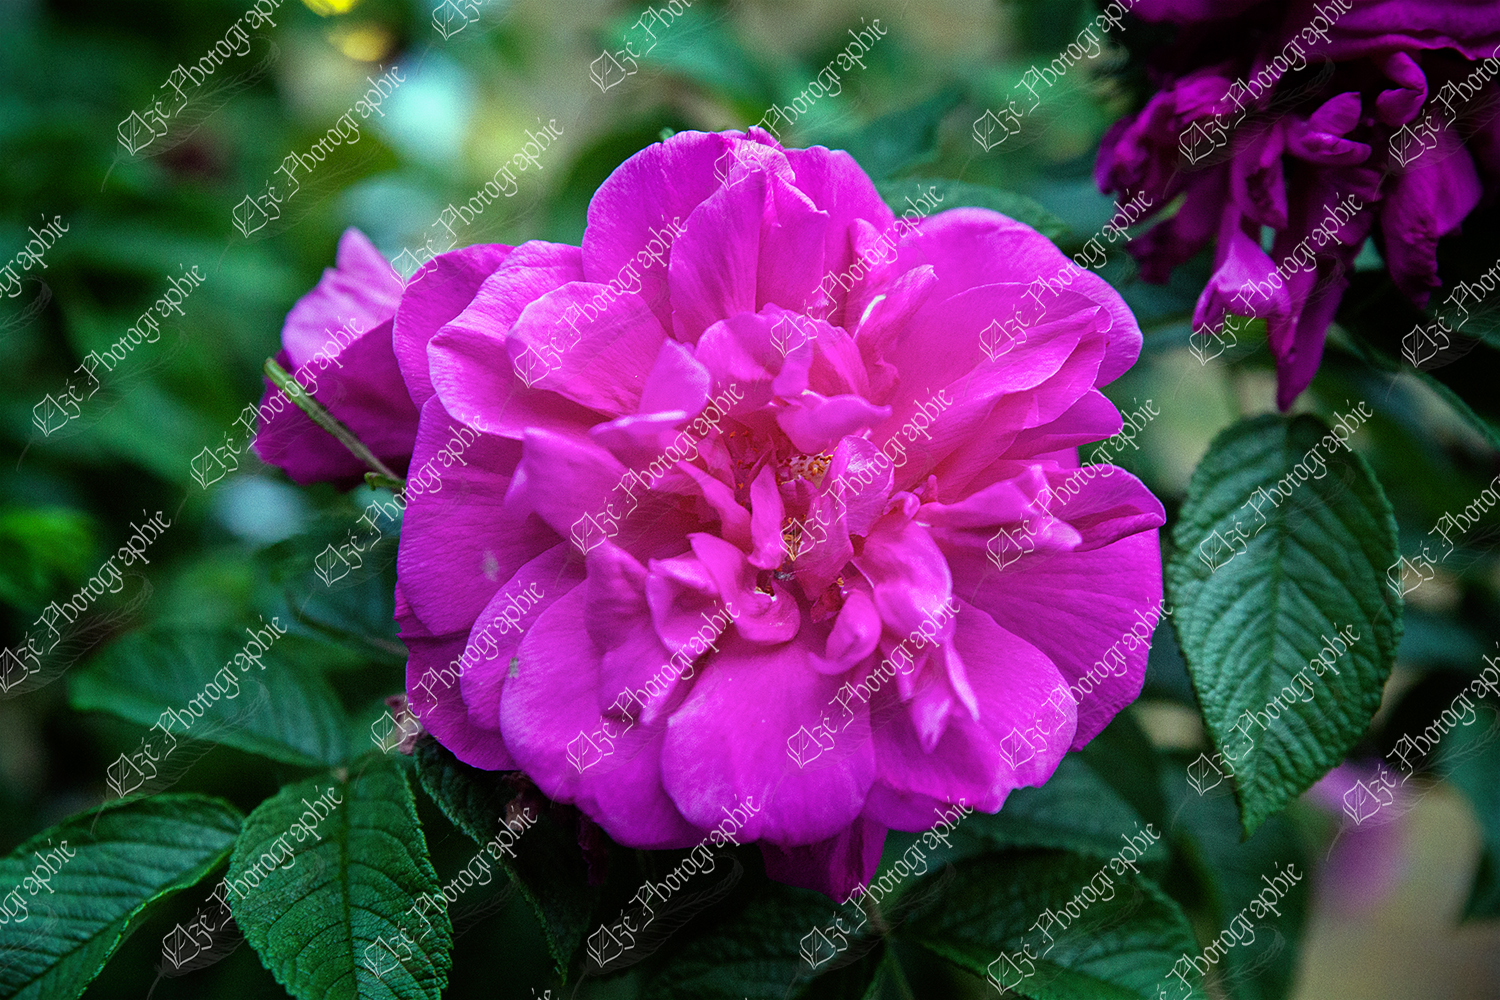 elze_photo_2359_rosier_rustique_fleur_flower_rustic_rose_bush